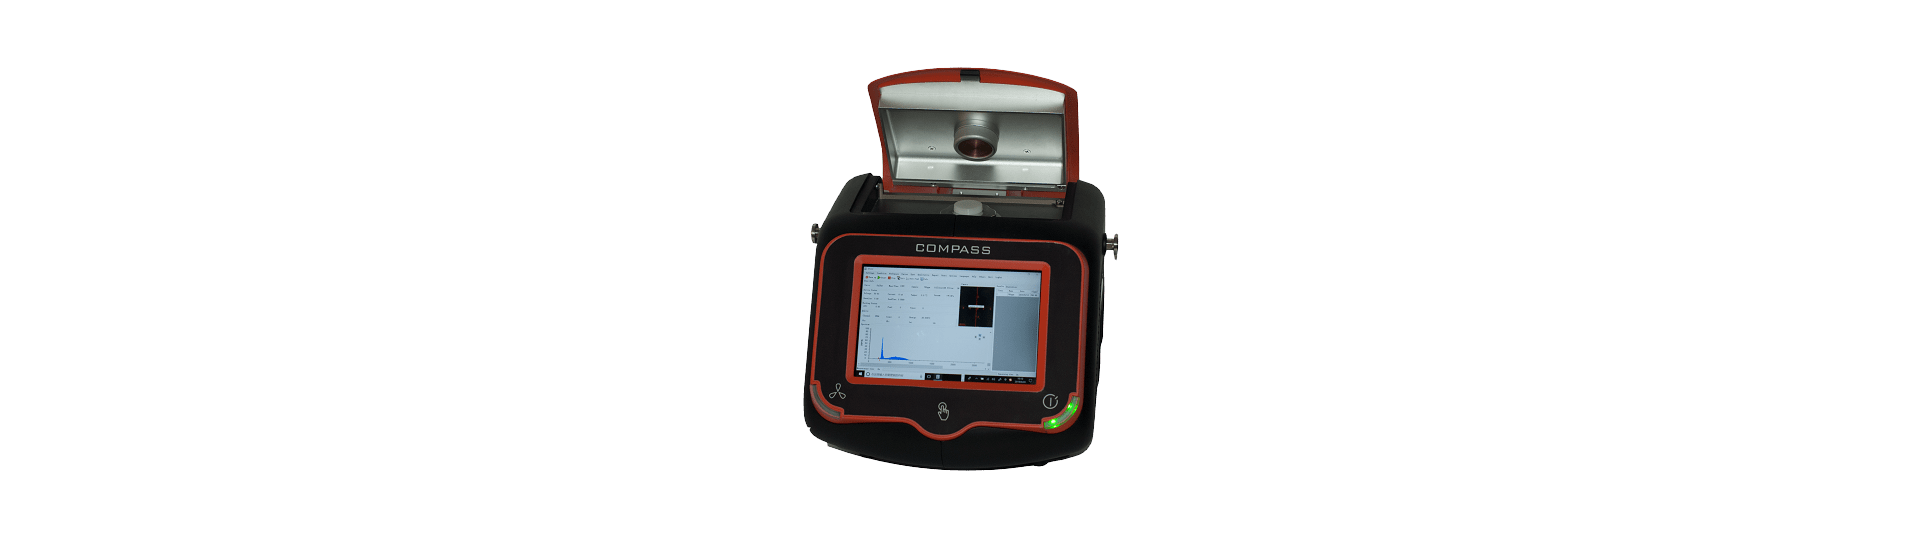 Appareil portable d'analyse de soufre dans les huiles Compass-4294 Tal instruments